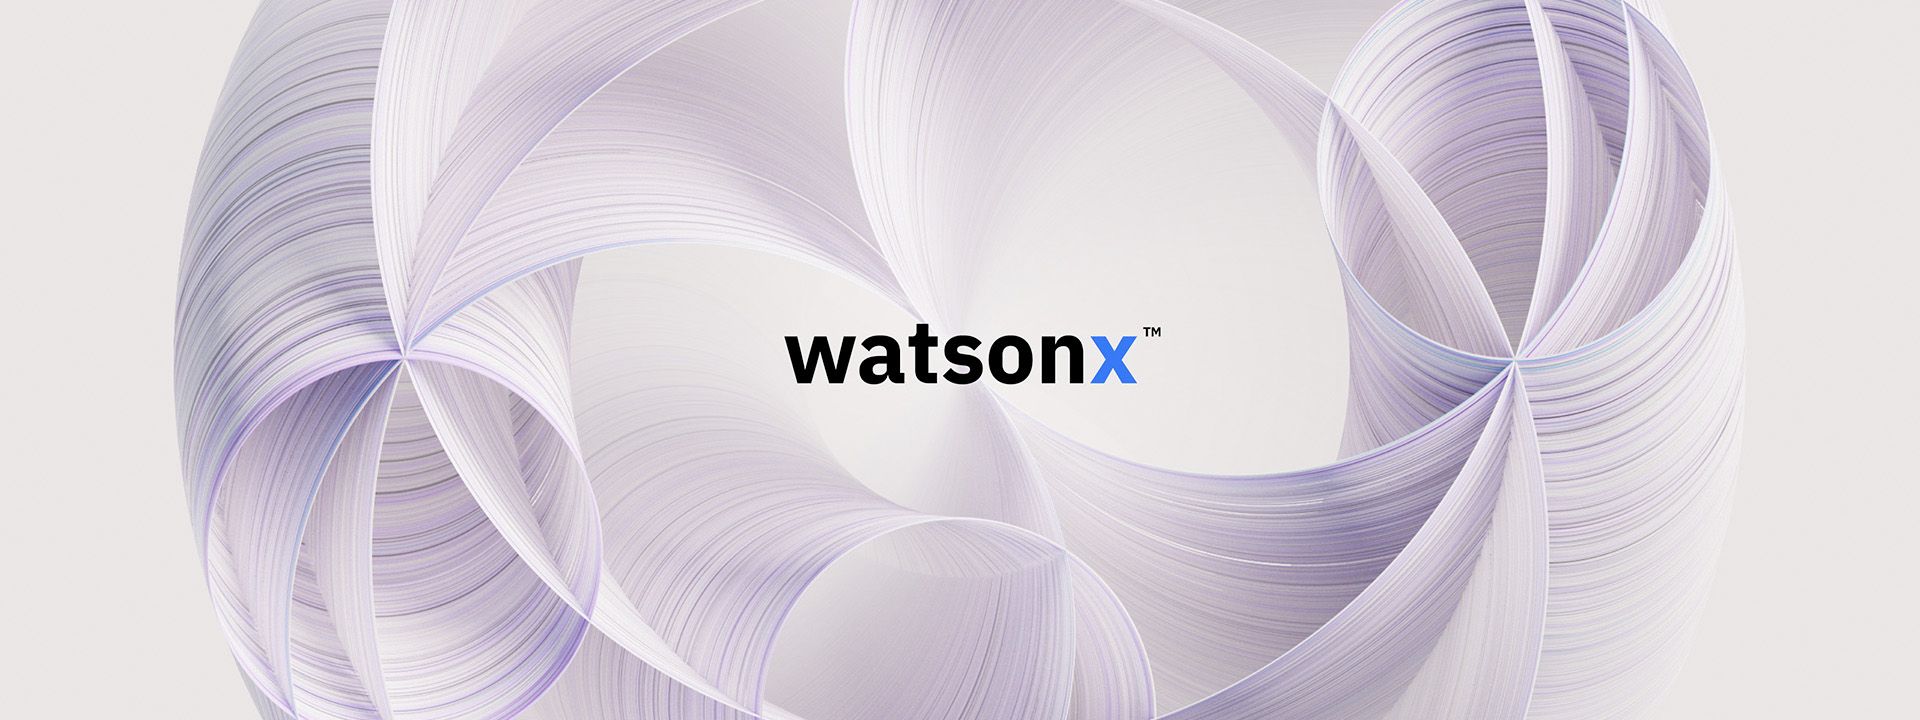 NTT DATA Business Solutions annuncia il Center of Excellence per l'AI generativa incentrato su IBM watsonx